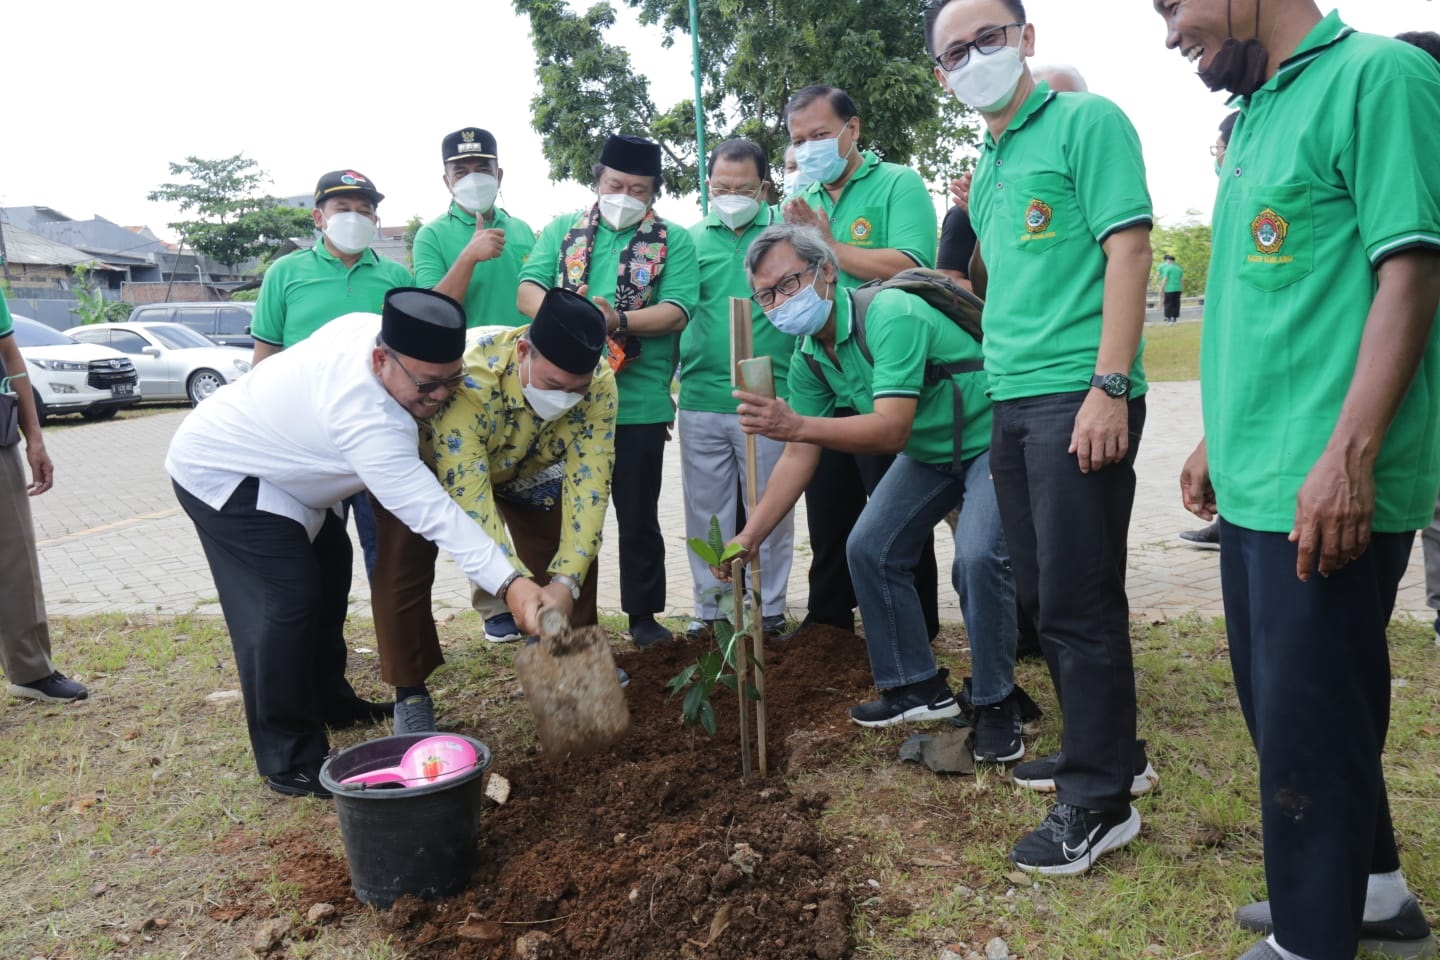 Hari Menanam Pohon Indonesia, LDII Ajak Masyarakat Ibadah dengan Tanam Pohon